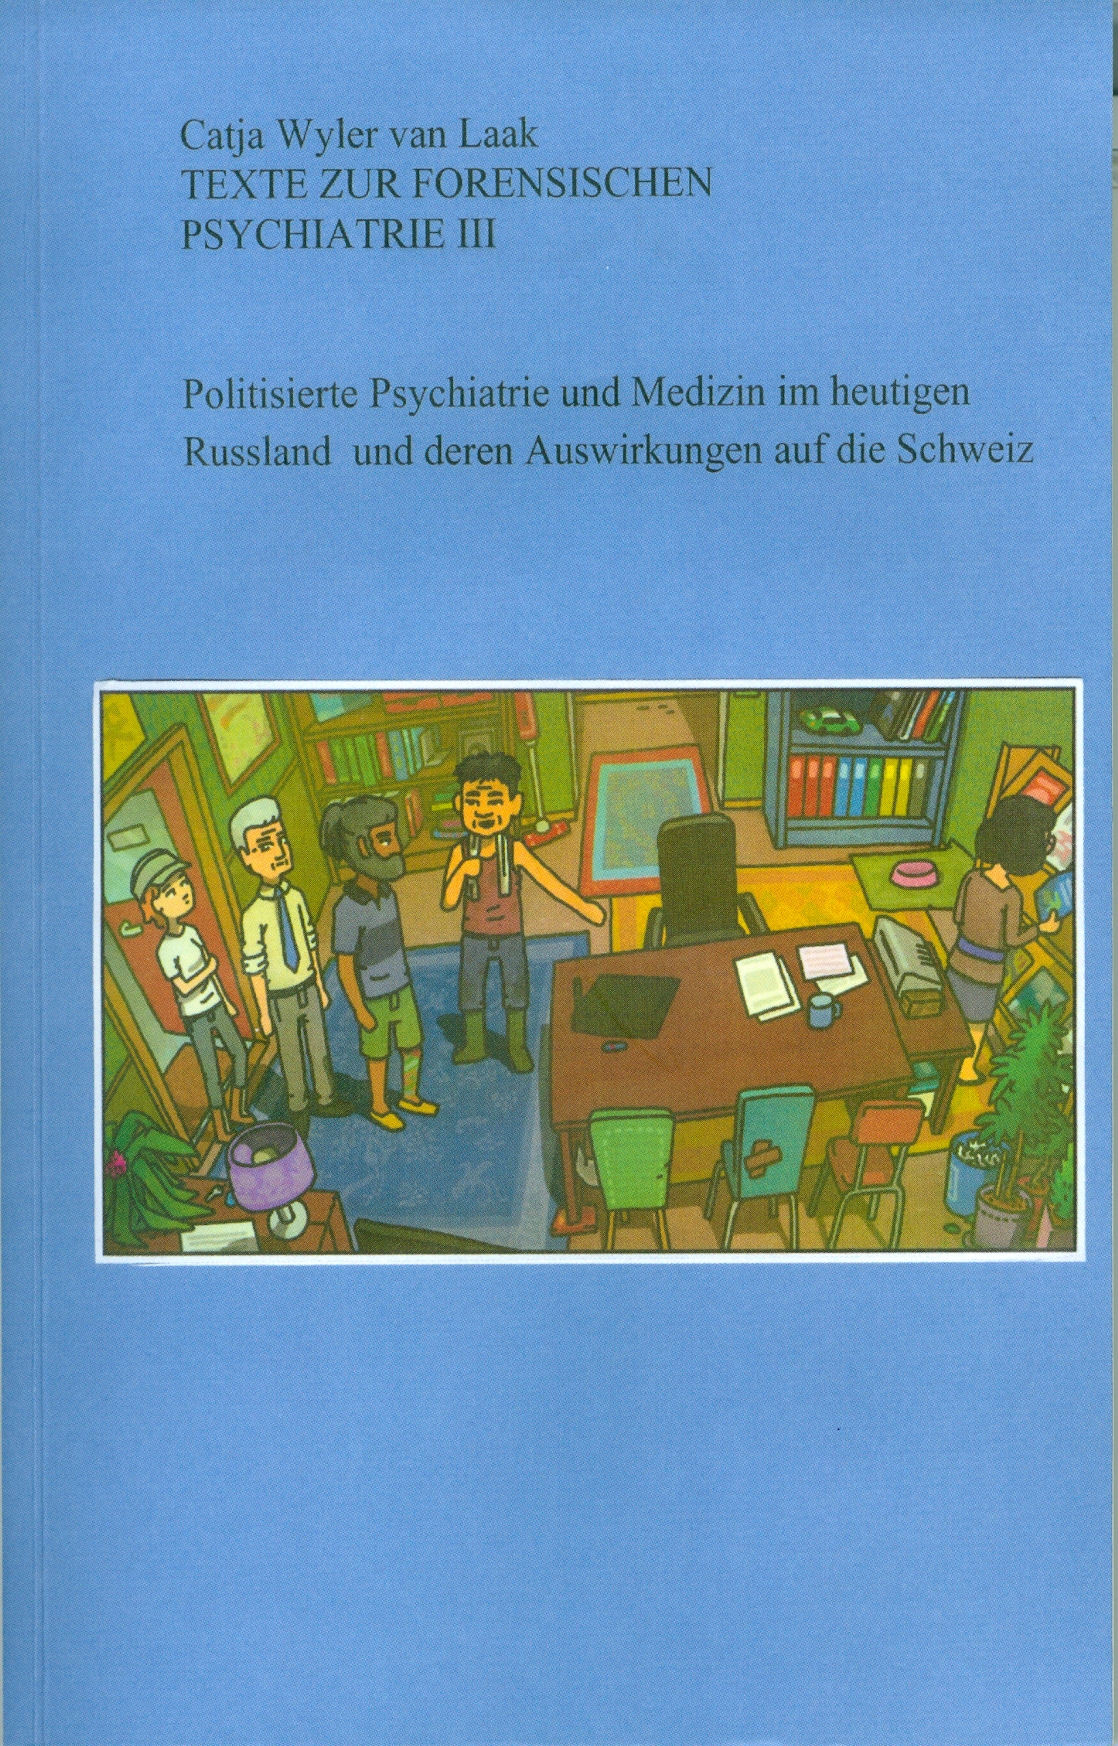 Texte zur forensischen Psychiatrie III [cover]